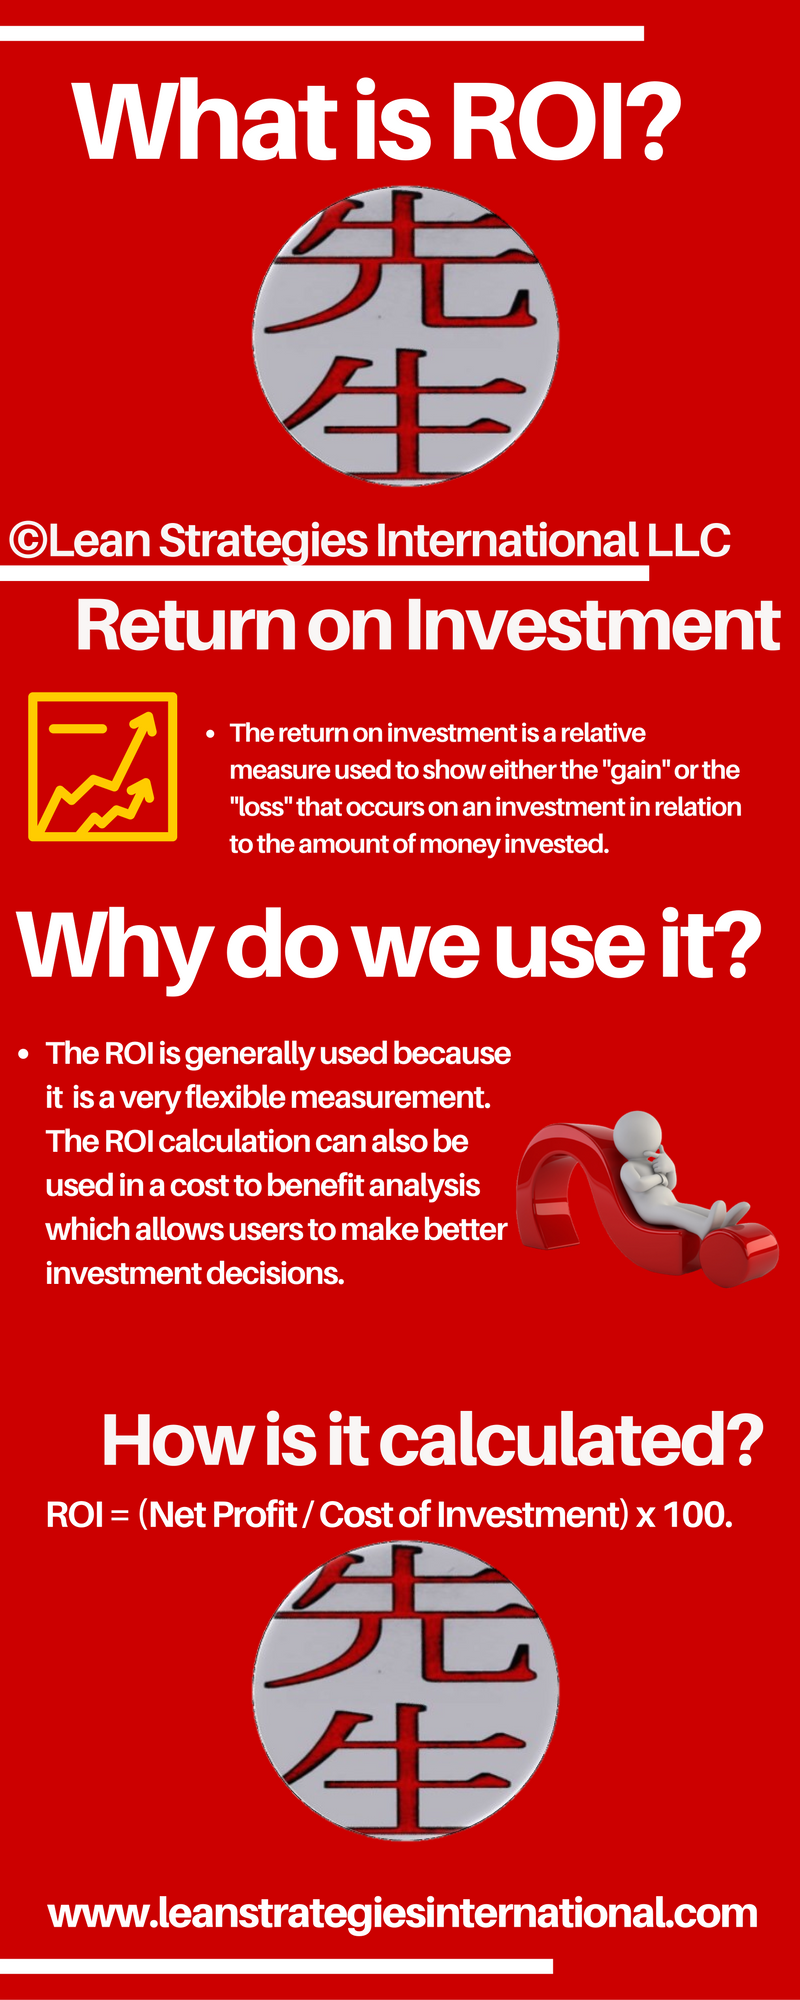 Return On Investment